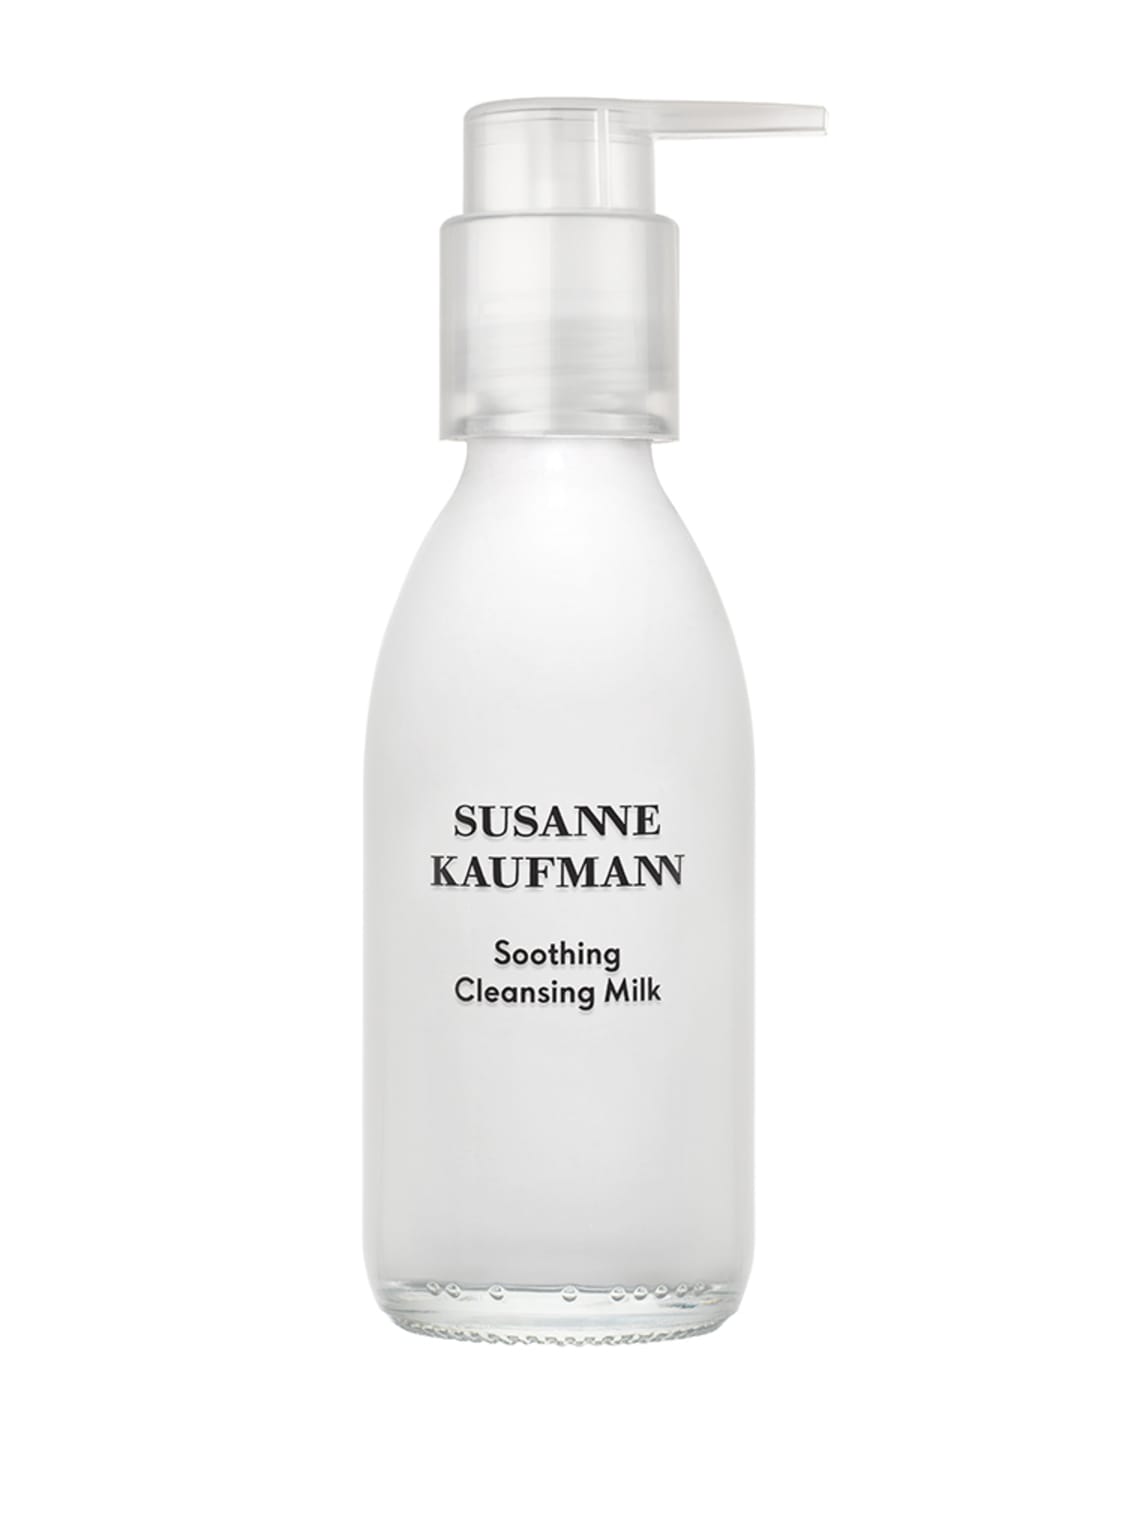 Susanne Kaufmann Soothing Cleansing Milk Pflegende Reinigungsmilch 100 ml von SUSANNE KAUFMANN